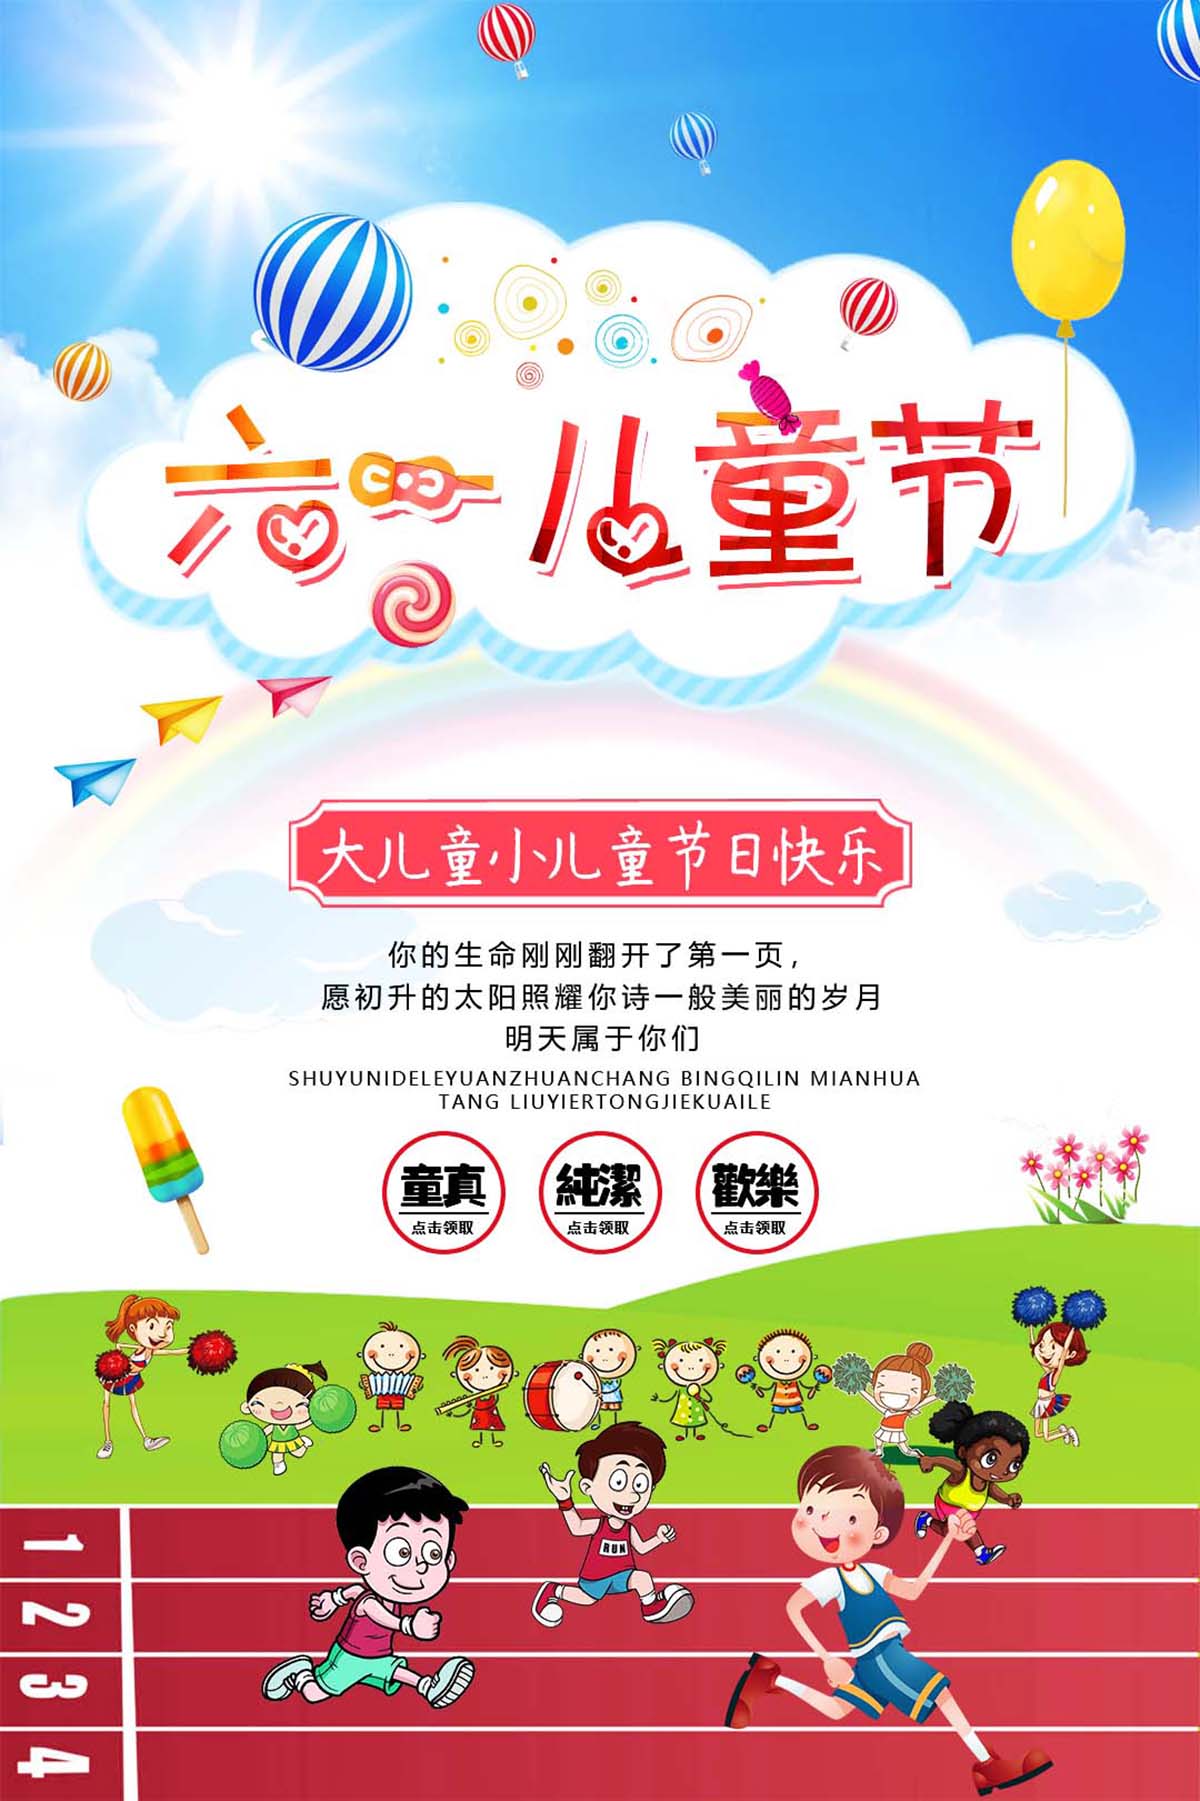 61六一儿童节亲子运动会活动海报设计PSD源文件